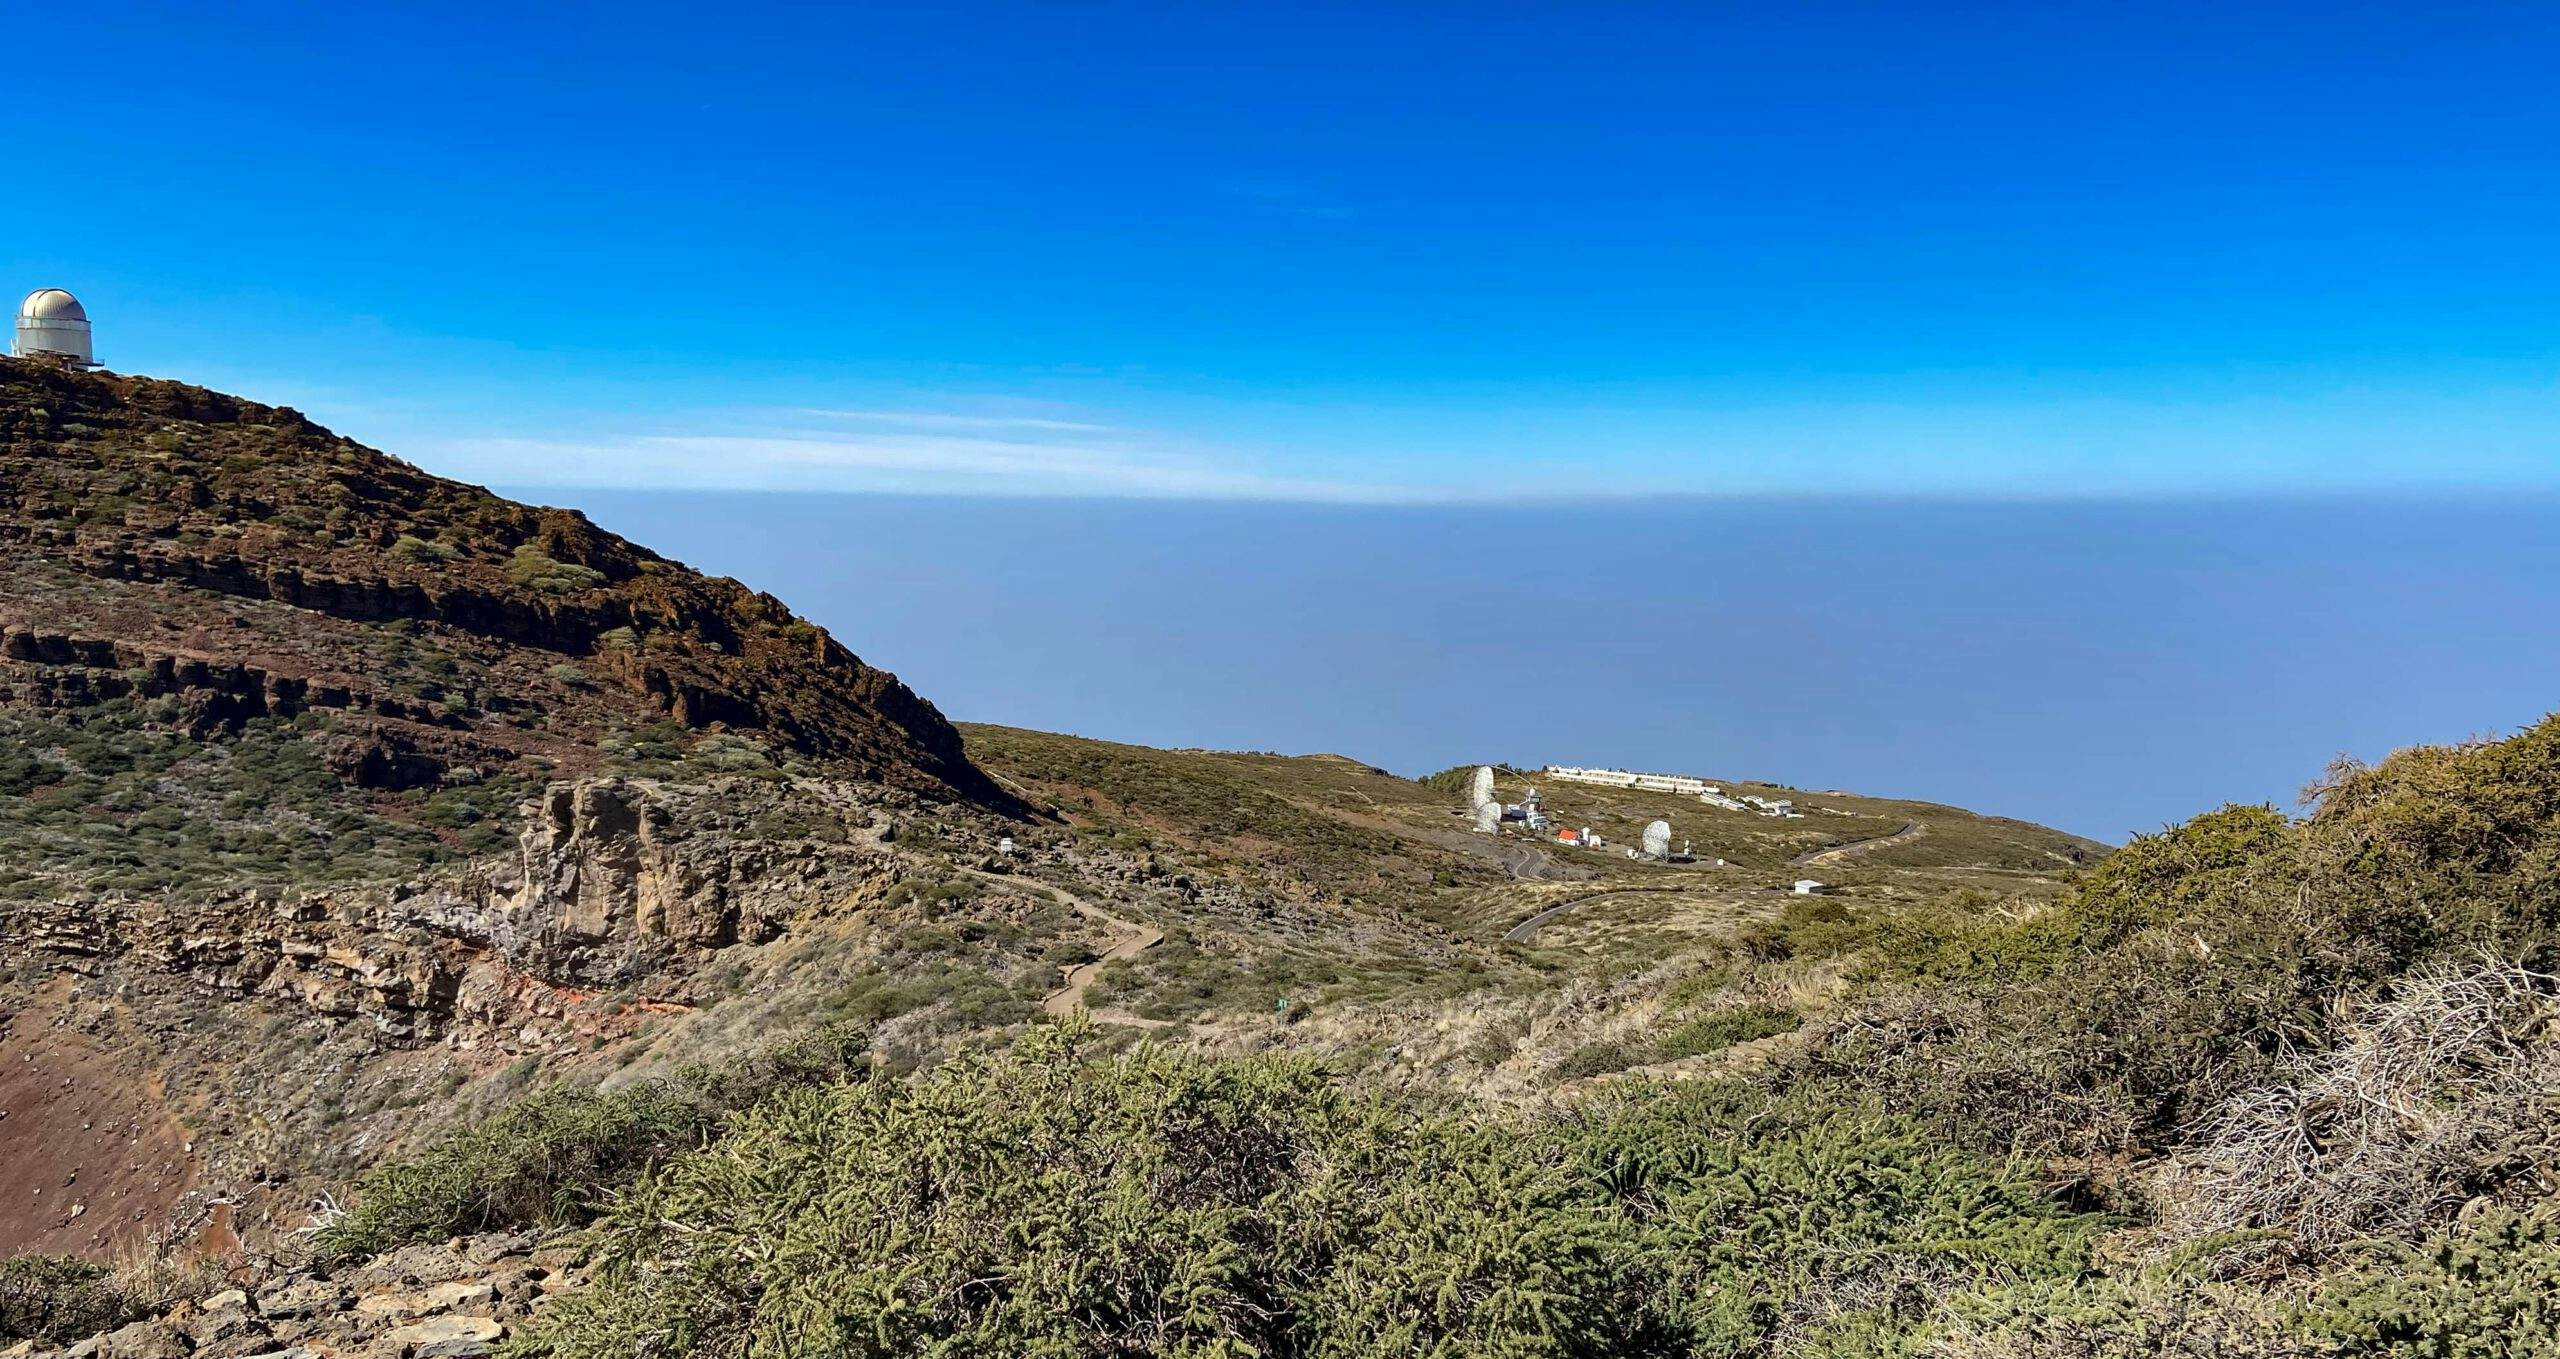 Observatorium vom Wanderweg aus gesehen